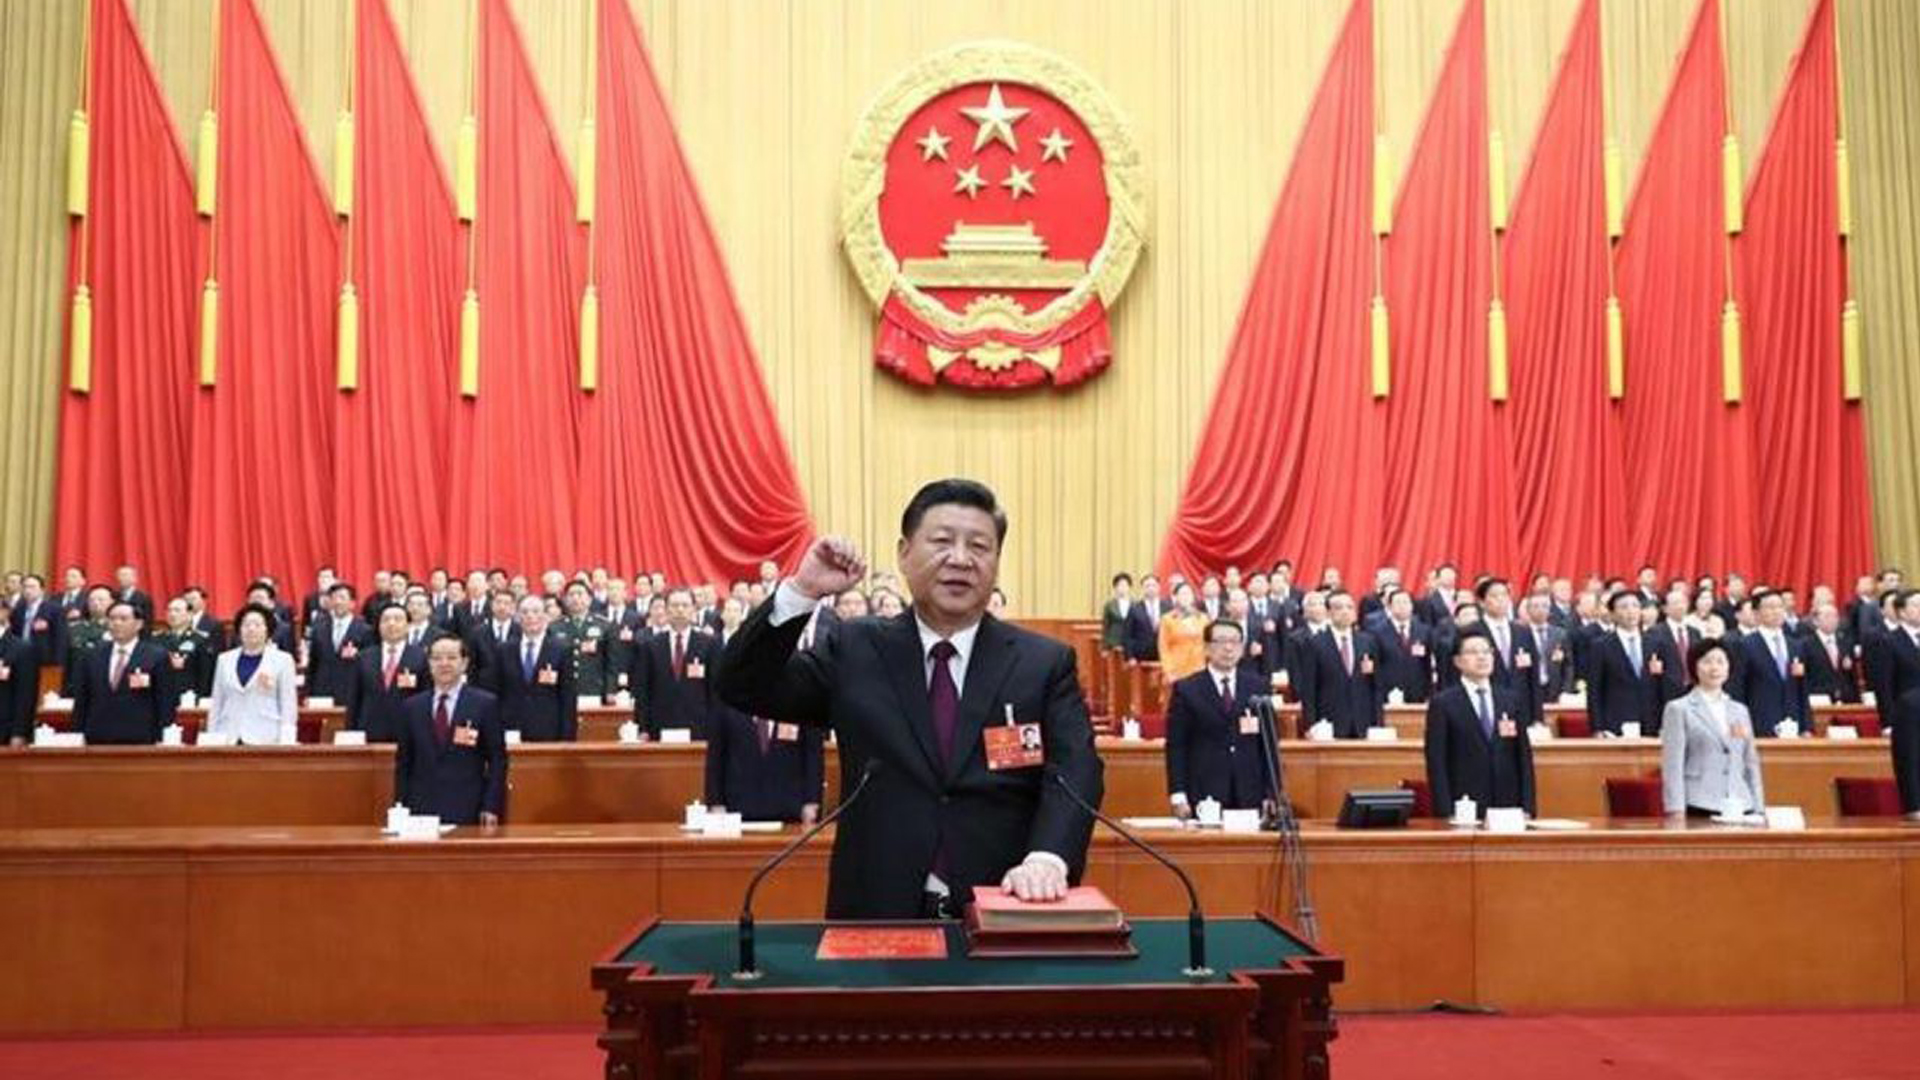 El jefe del régimen chino, Xi Jinping toma la palabra frente a los miembros del Partido Comunista (Reuters)